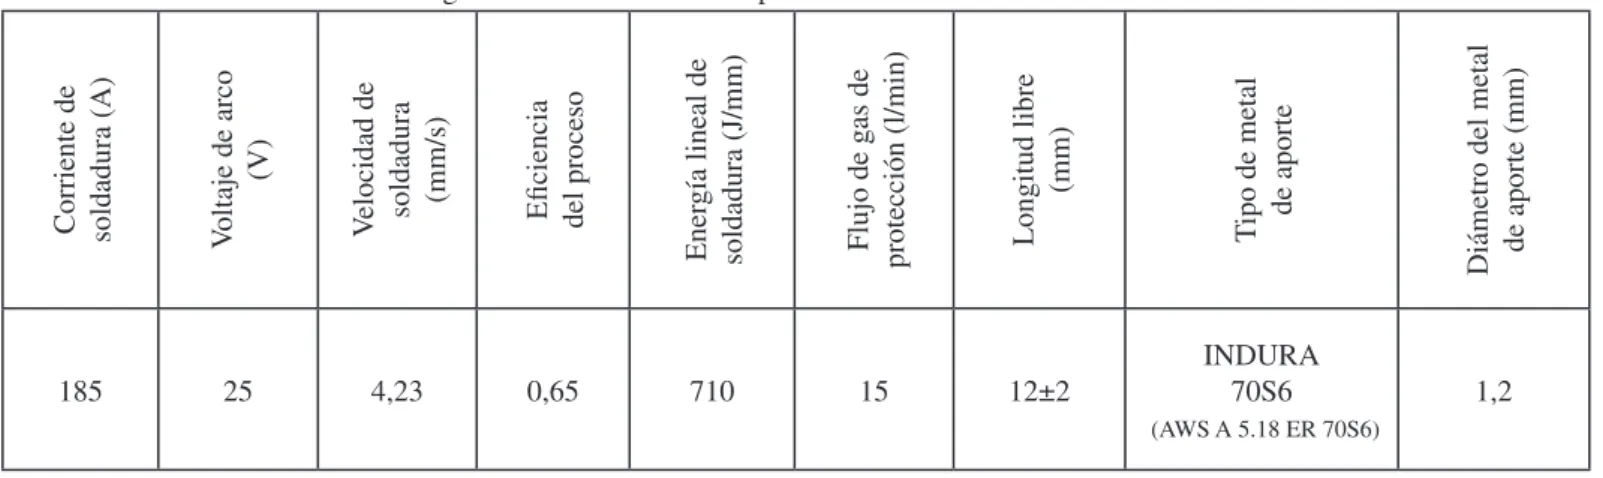 Tabla 1. Elementos del régimen de soldadura correspondientes a los niveles medios de corriente de soldadura.